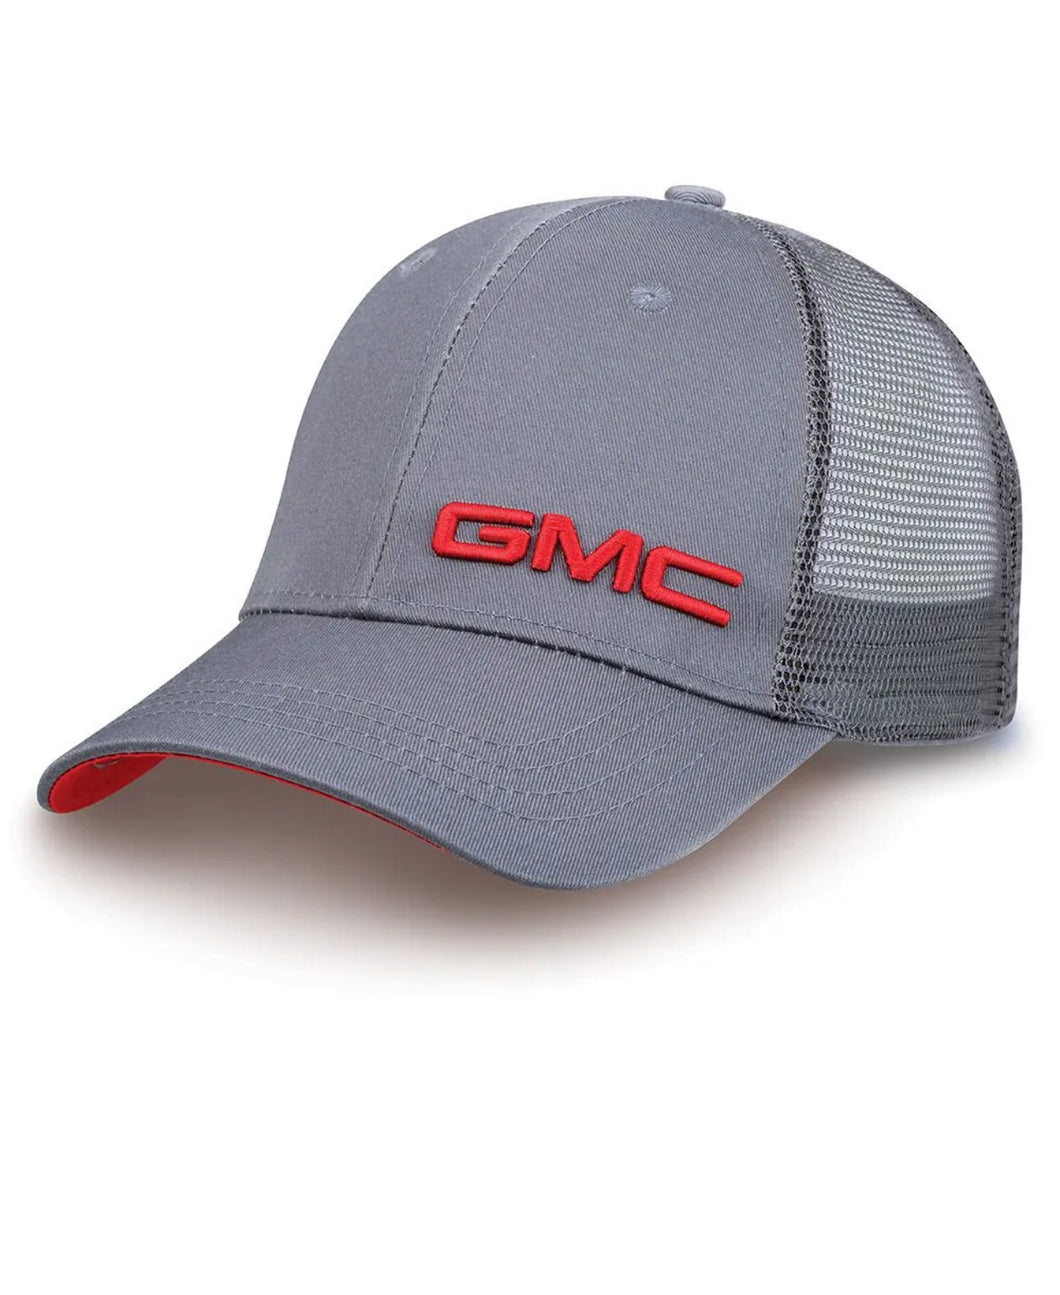 3-D GMC VALUE CAP GRAY